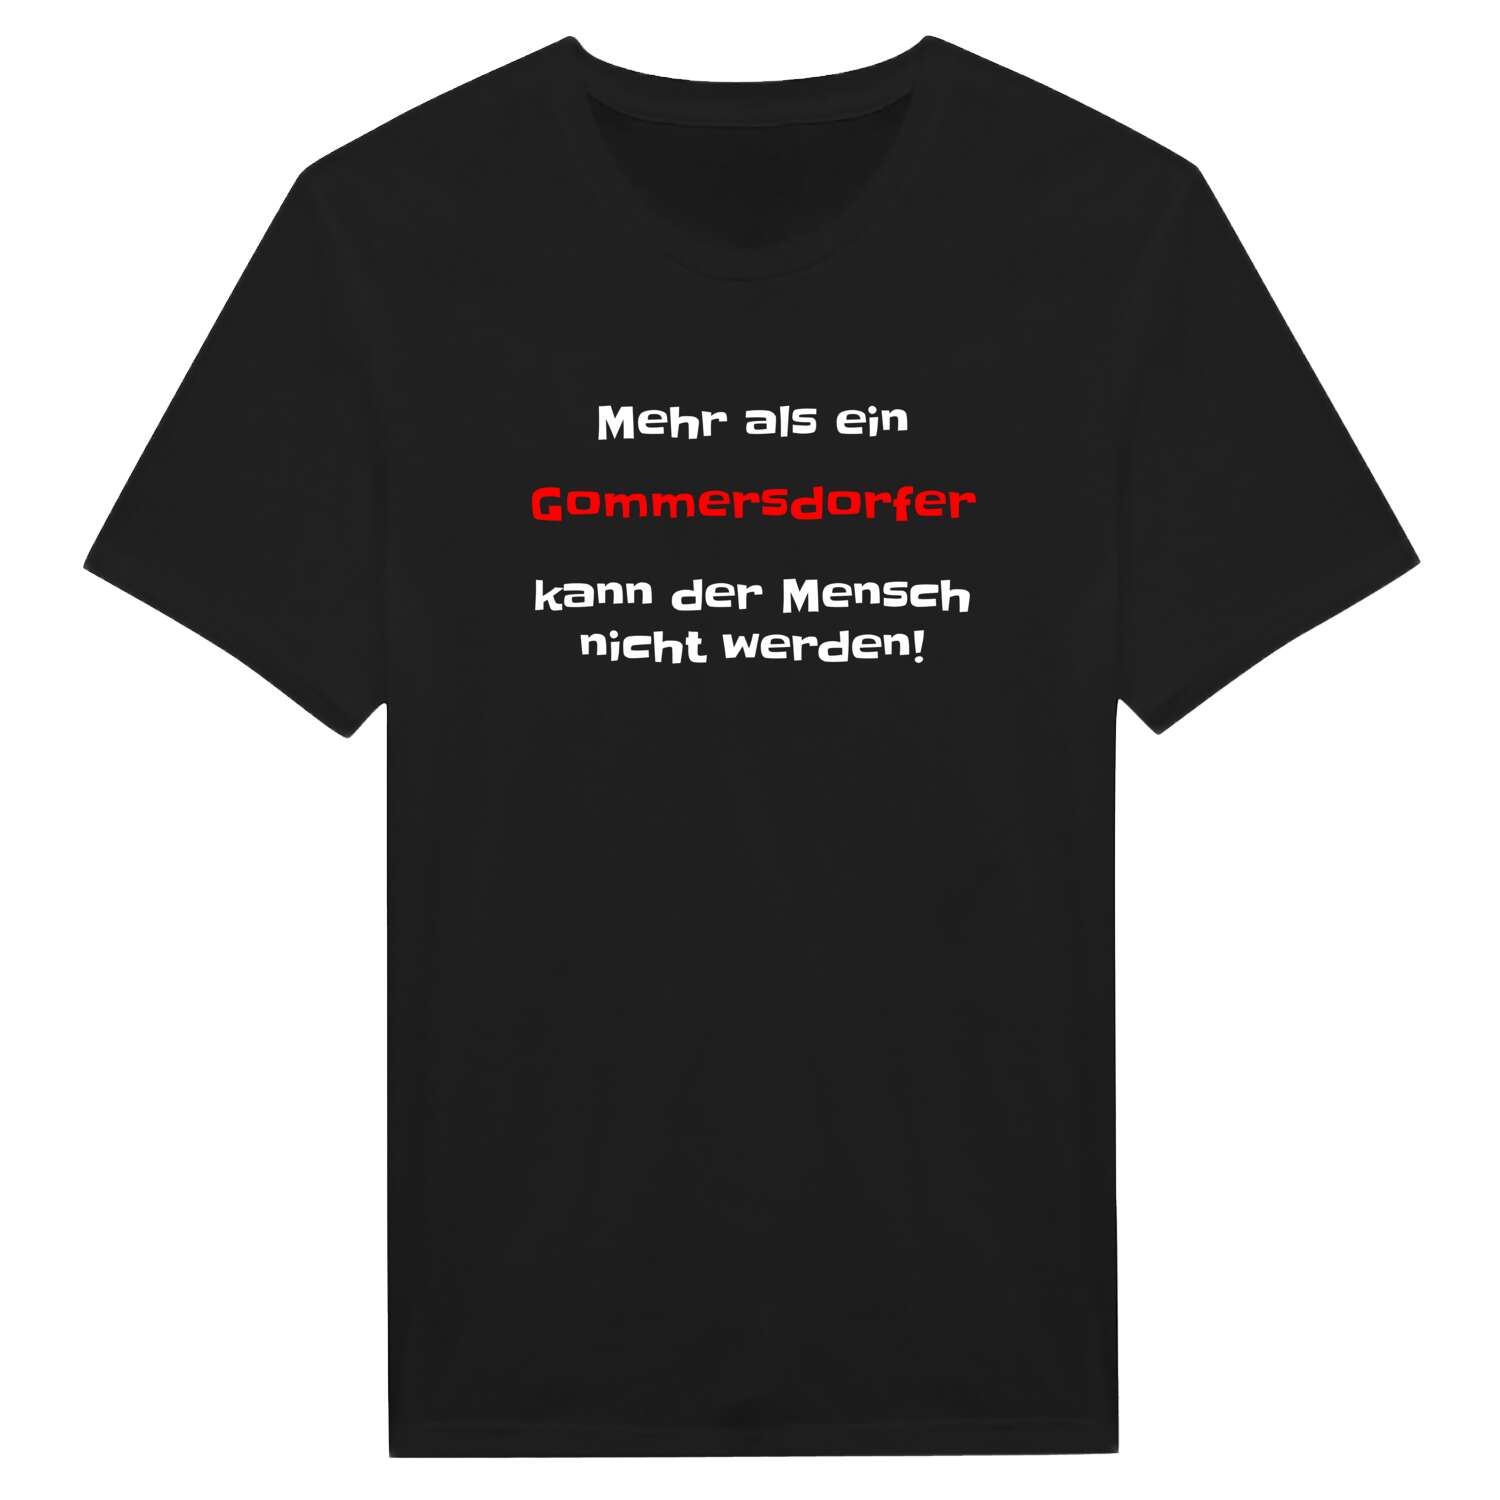 Gommersdorf T-Shirt »Mehr als ein«